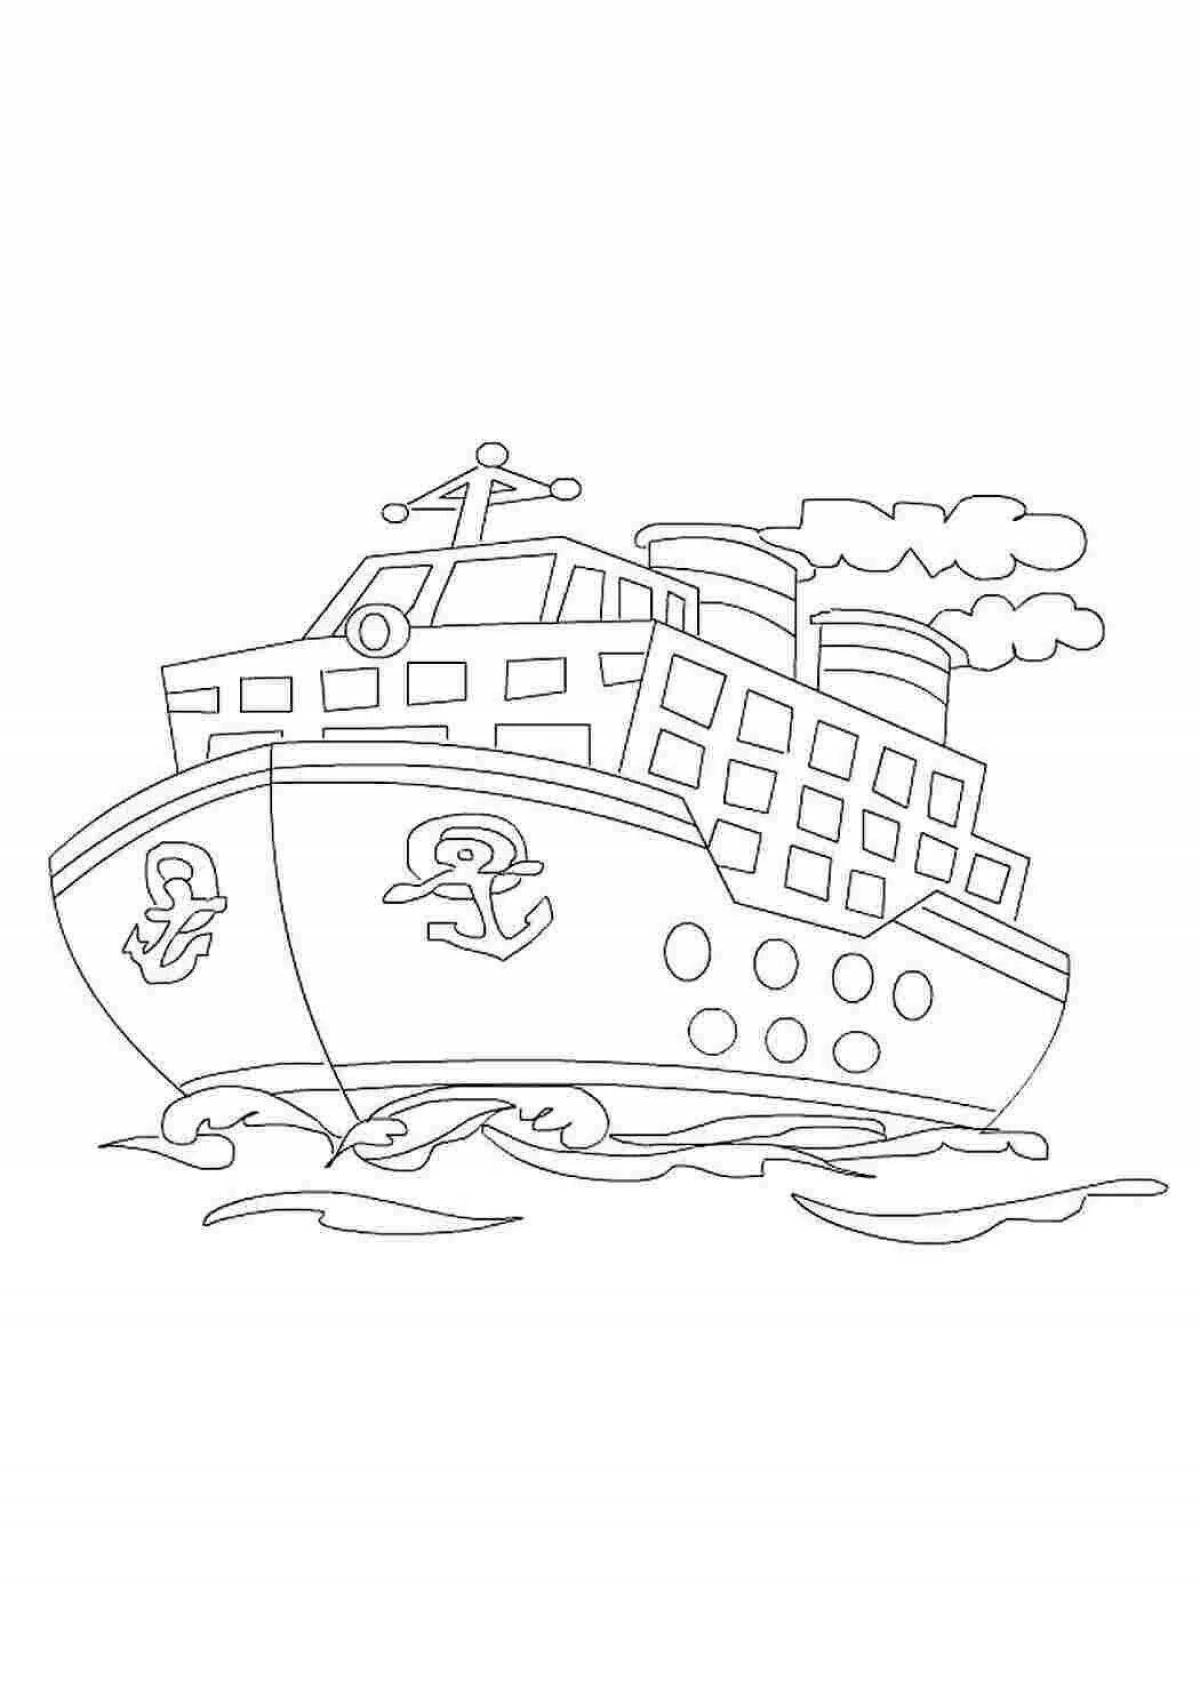 Изысканная раскраска корабля 23 февраля